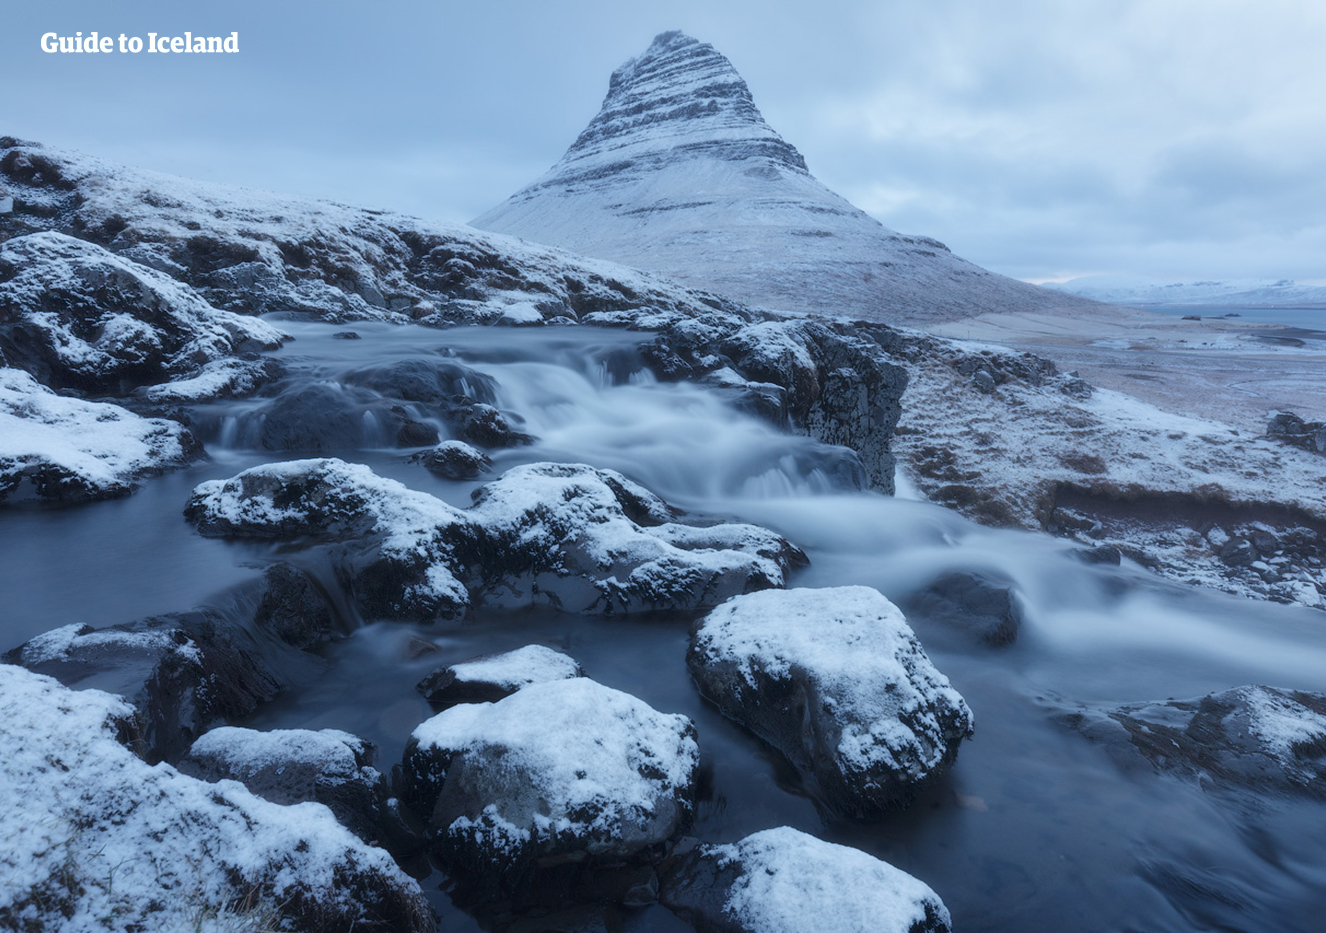 Der verschneite Berg Kirkjufell diente schon als Drehort 'nördlich der Mauer' in der Serie Game of Thrones.